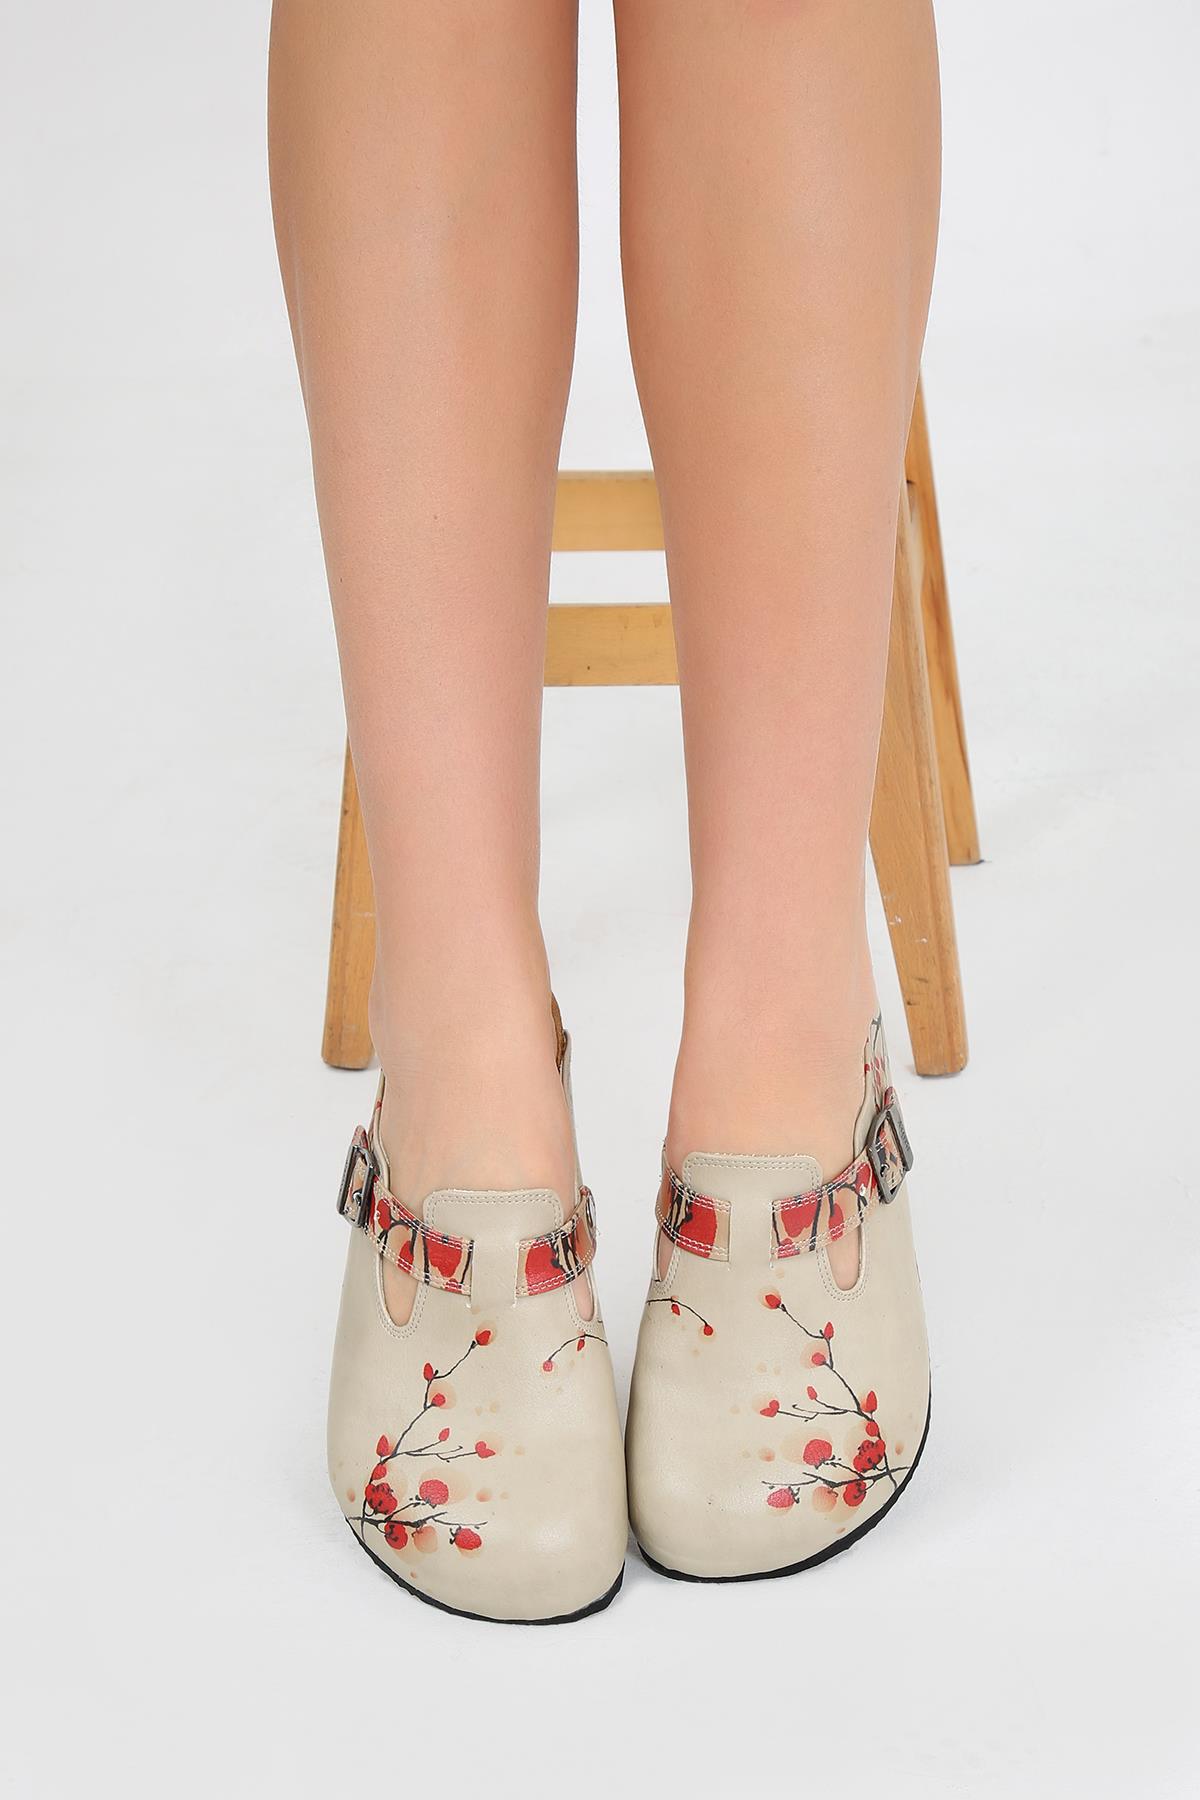 Cassido Shoes ❤